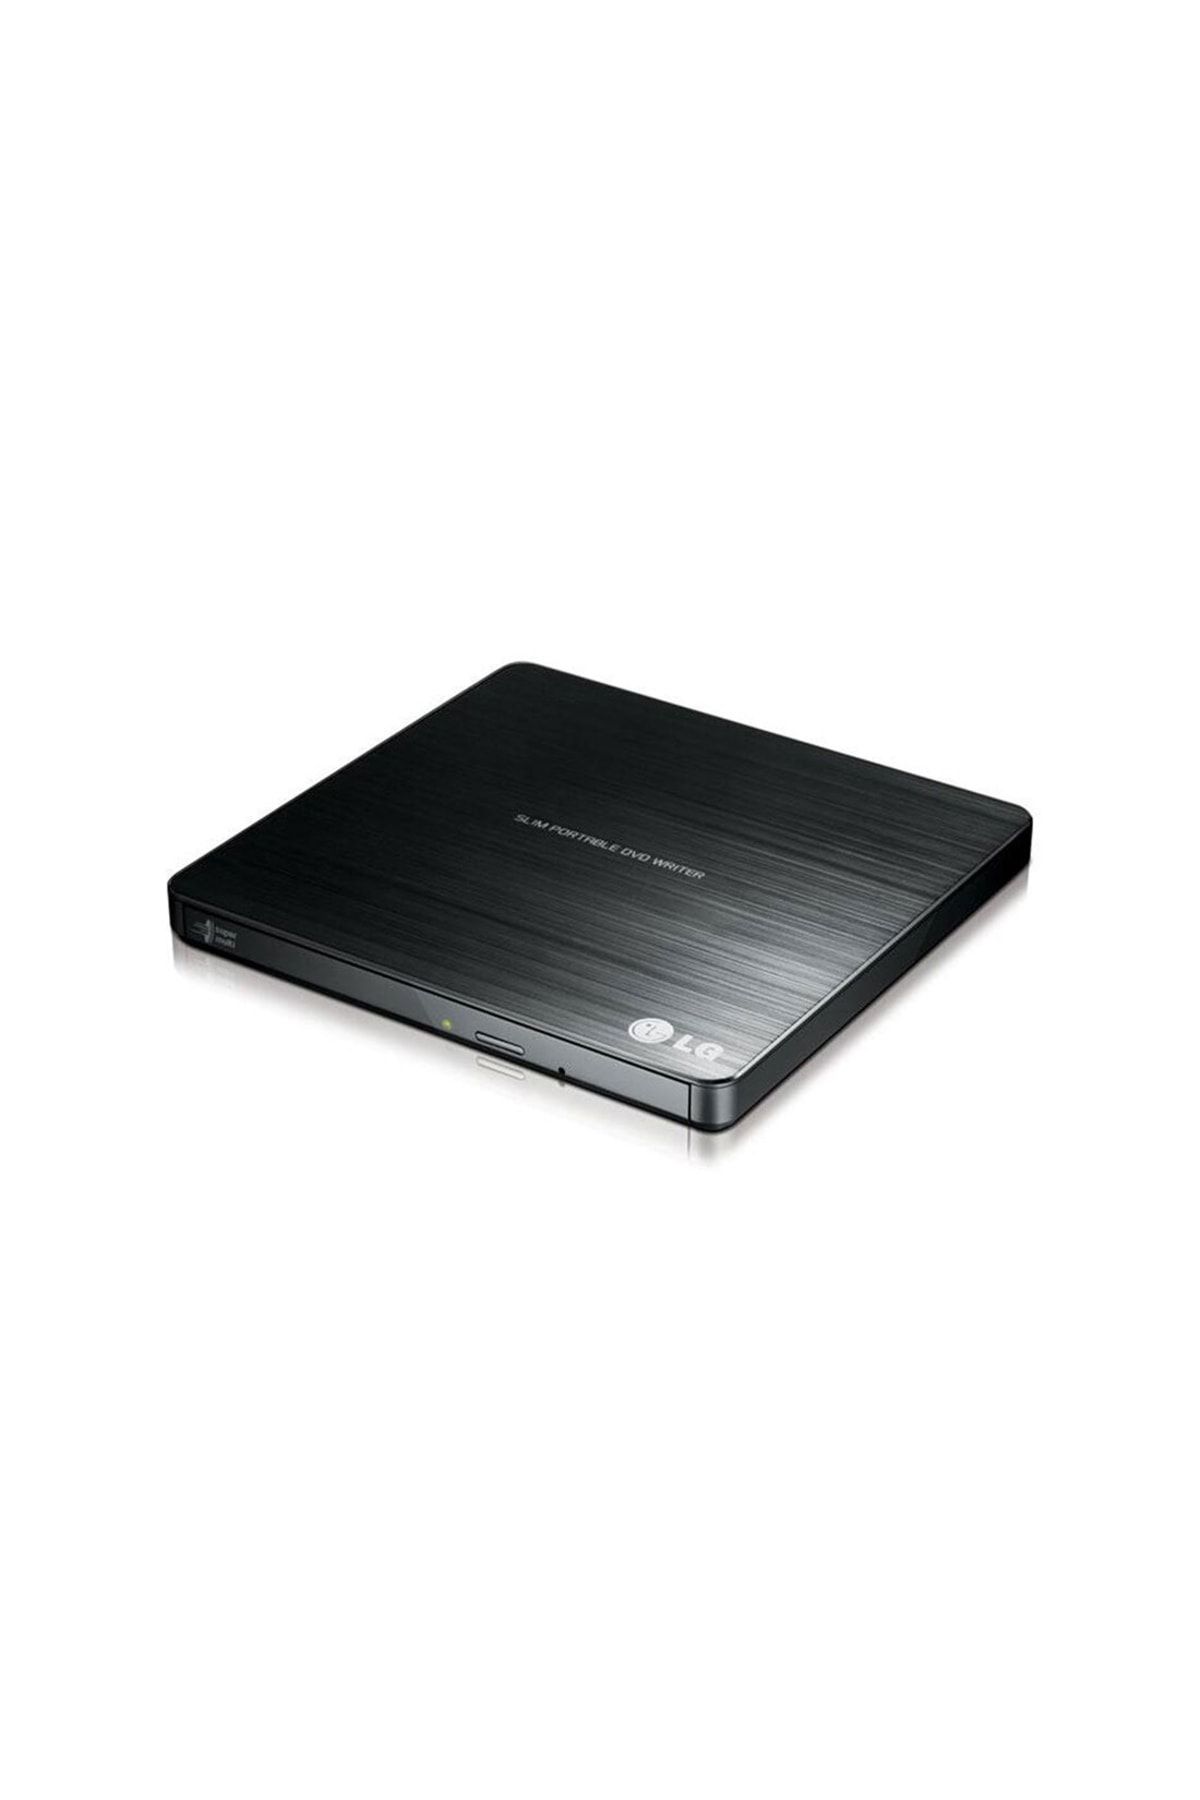 LG Gp60nb50 Taşınabilir Ultra Slim Usb Dvd-rw Yazıcı Writer 0.5 Inch